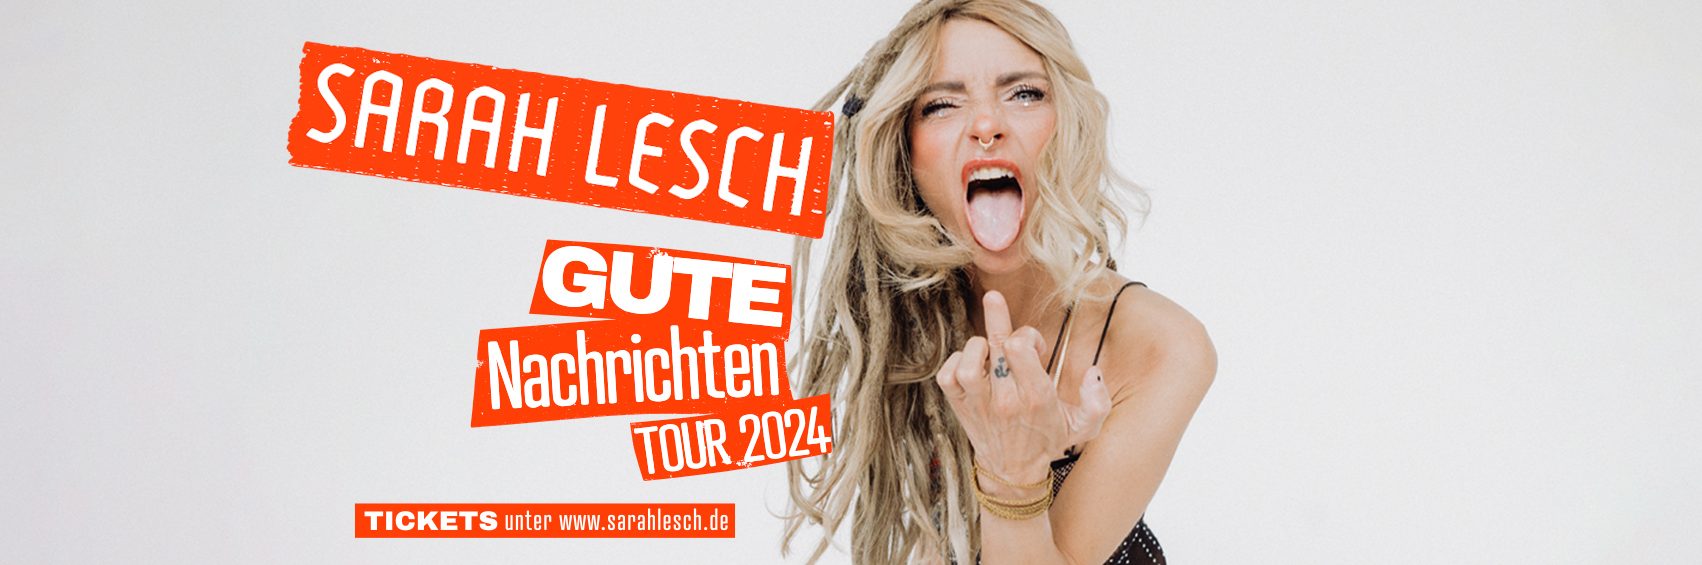 Sarah Lesch – GUTE NACHRICHTEN Tour